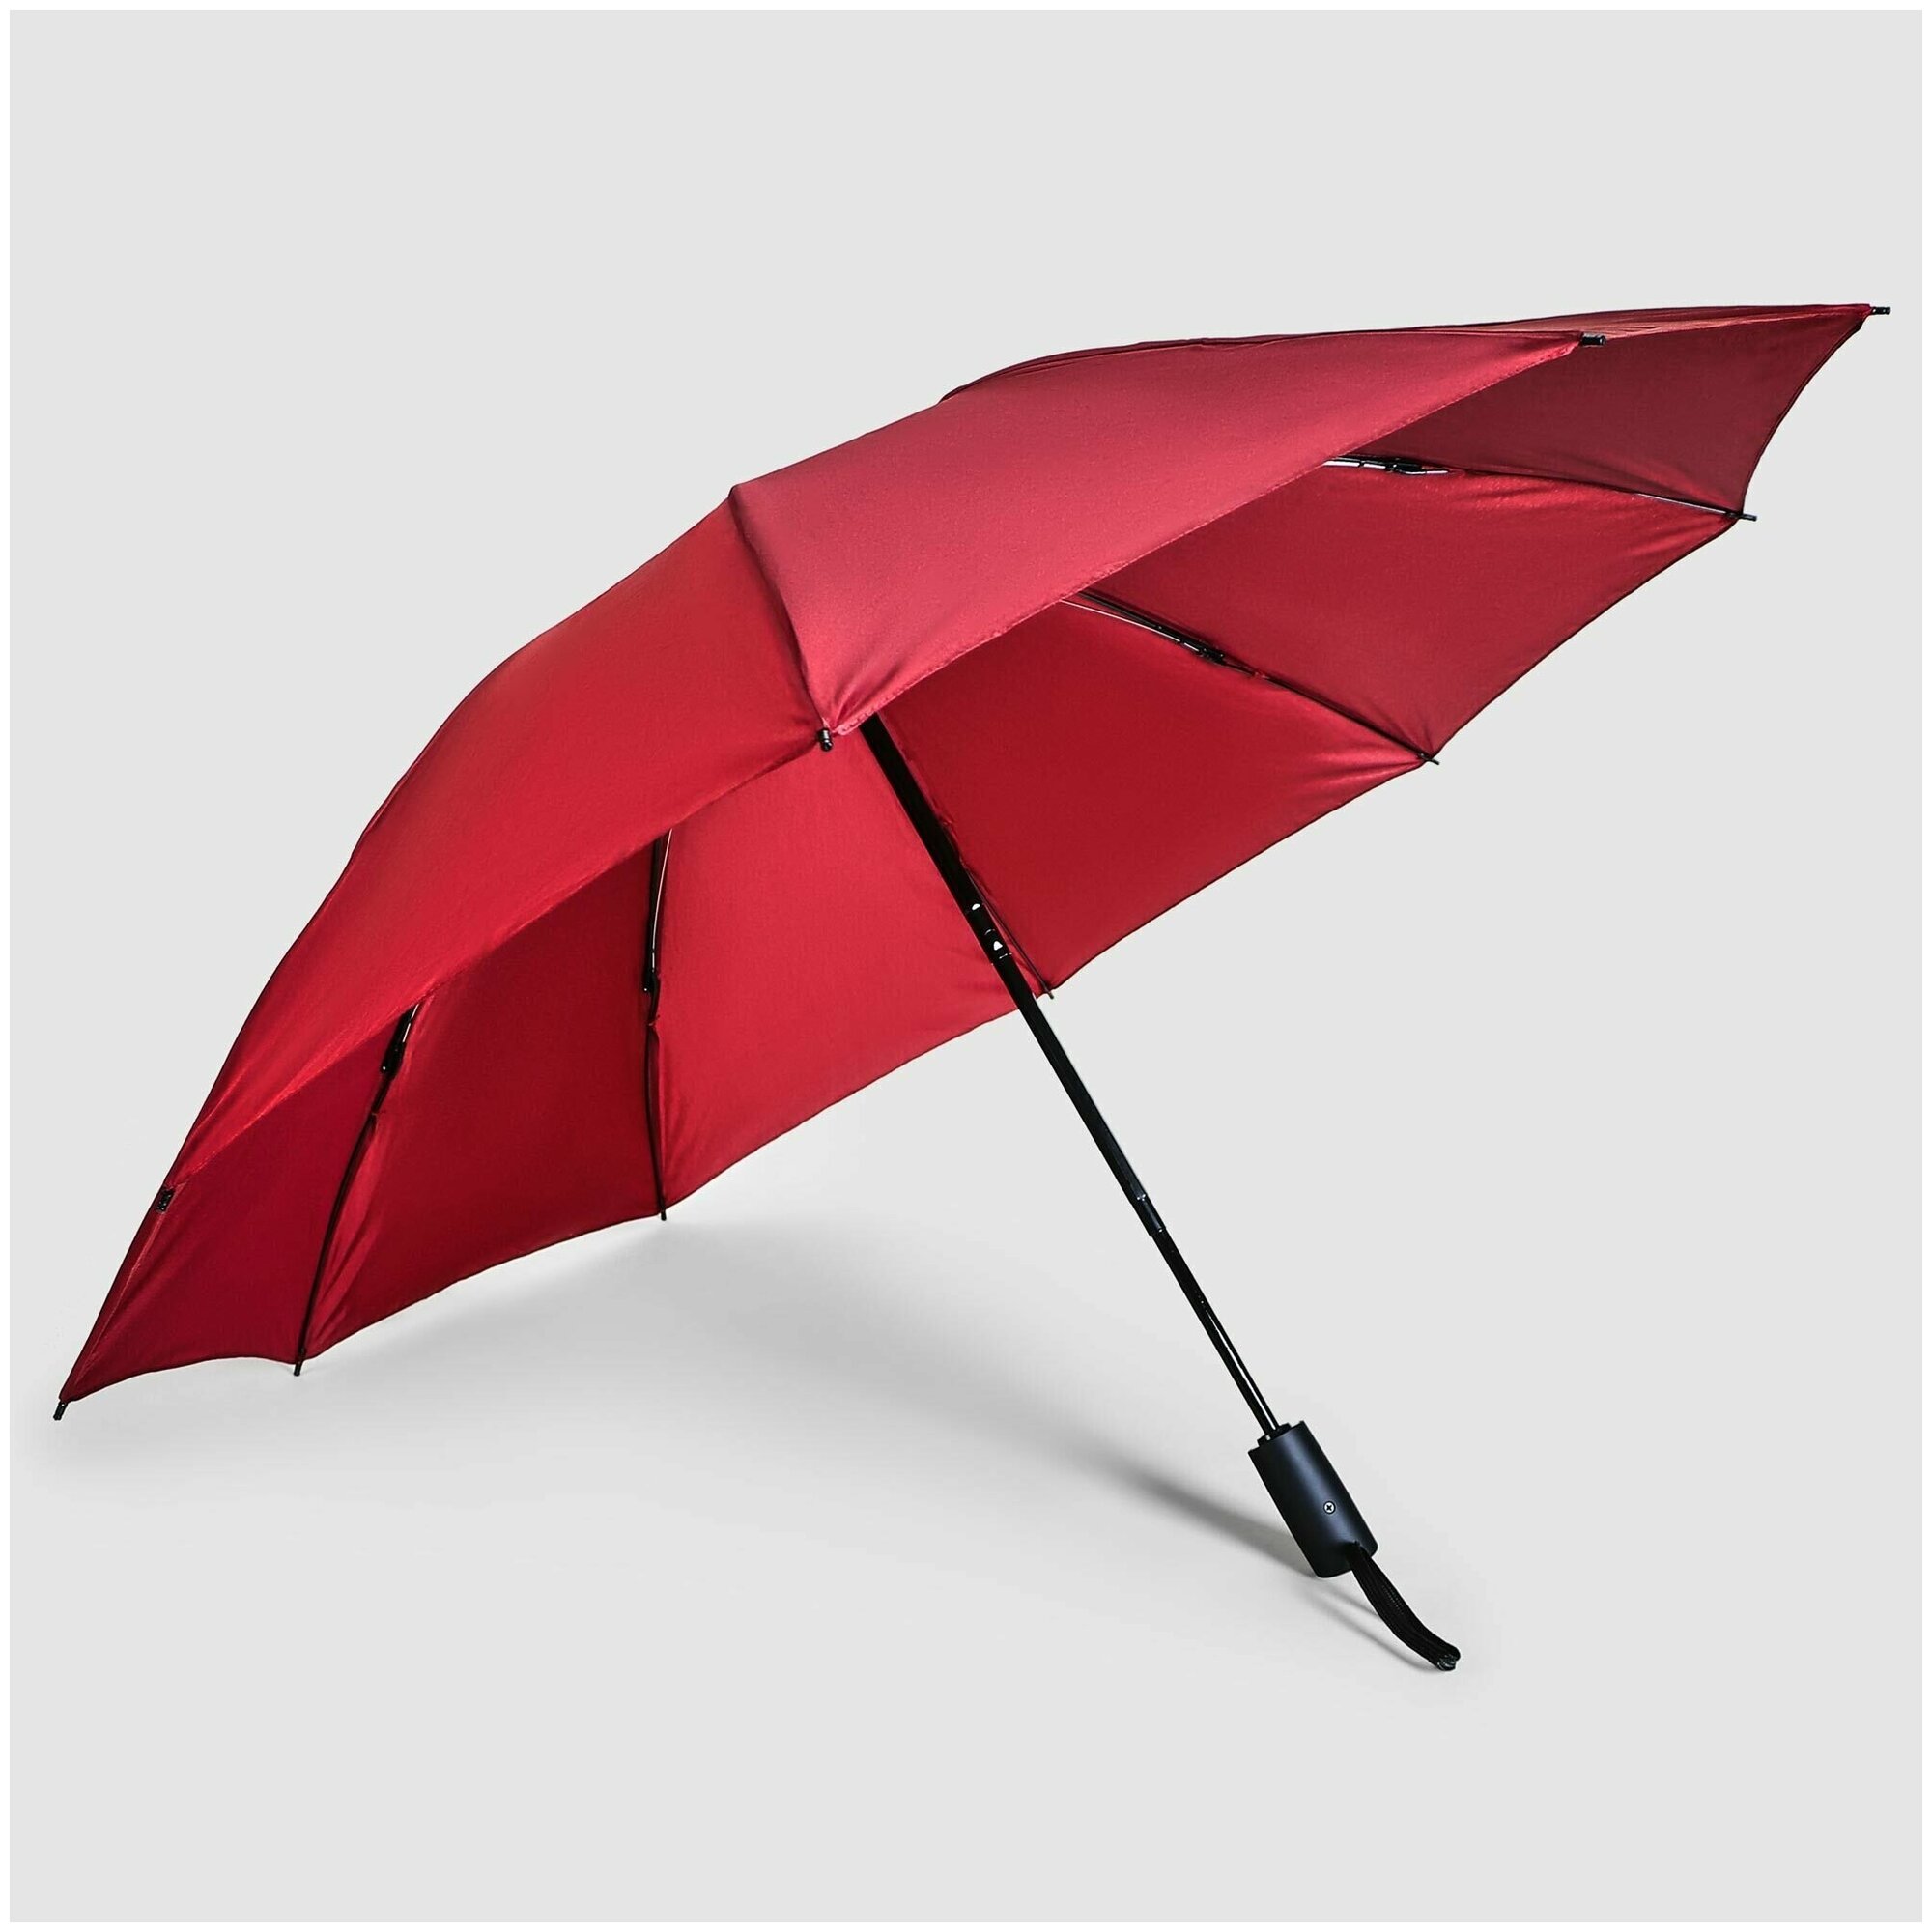 Автоматический зонт Jiemailong , легкий компактный зонт повышенной прочности, красный